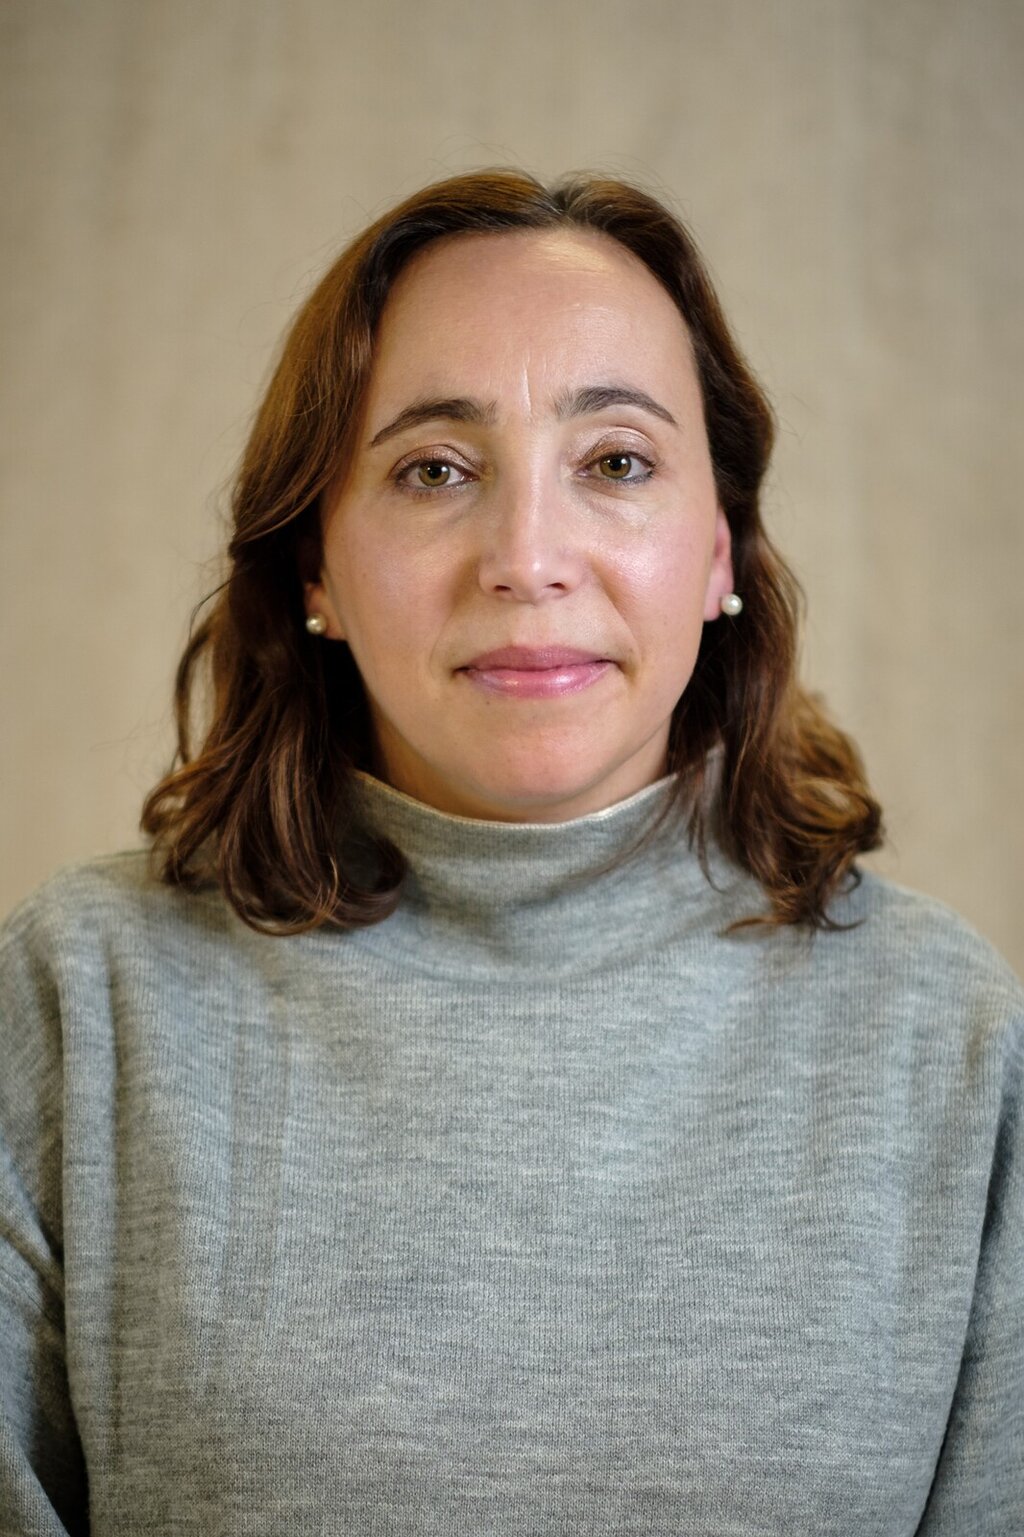 Susana Filipa Coelho Rafael